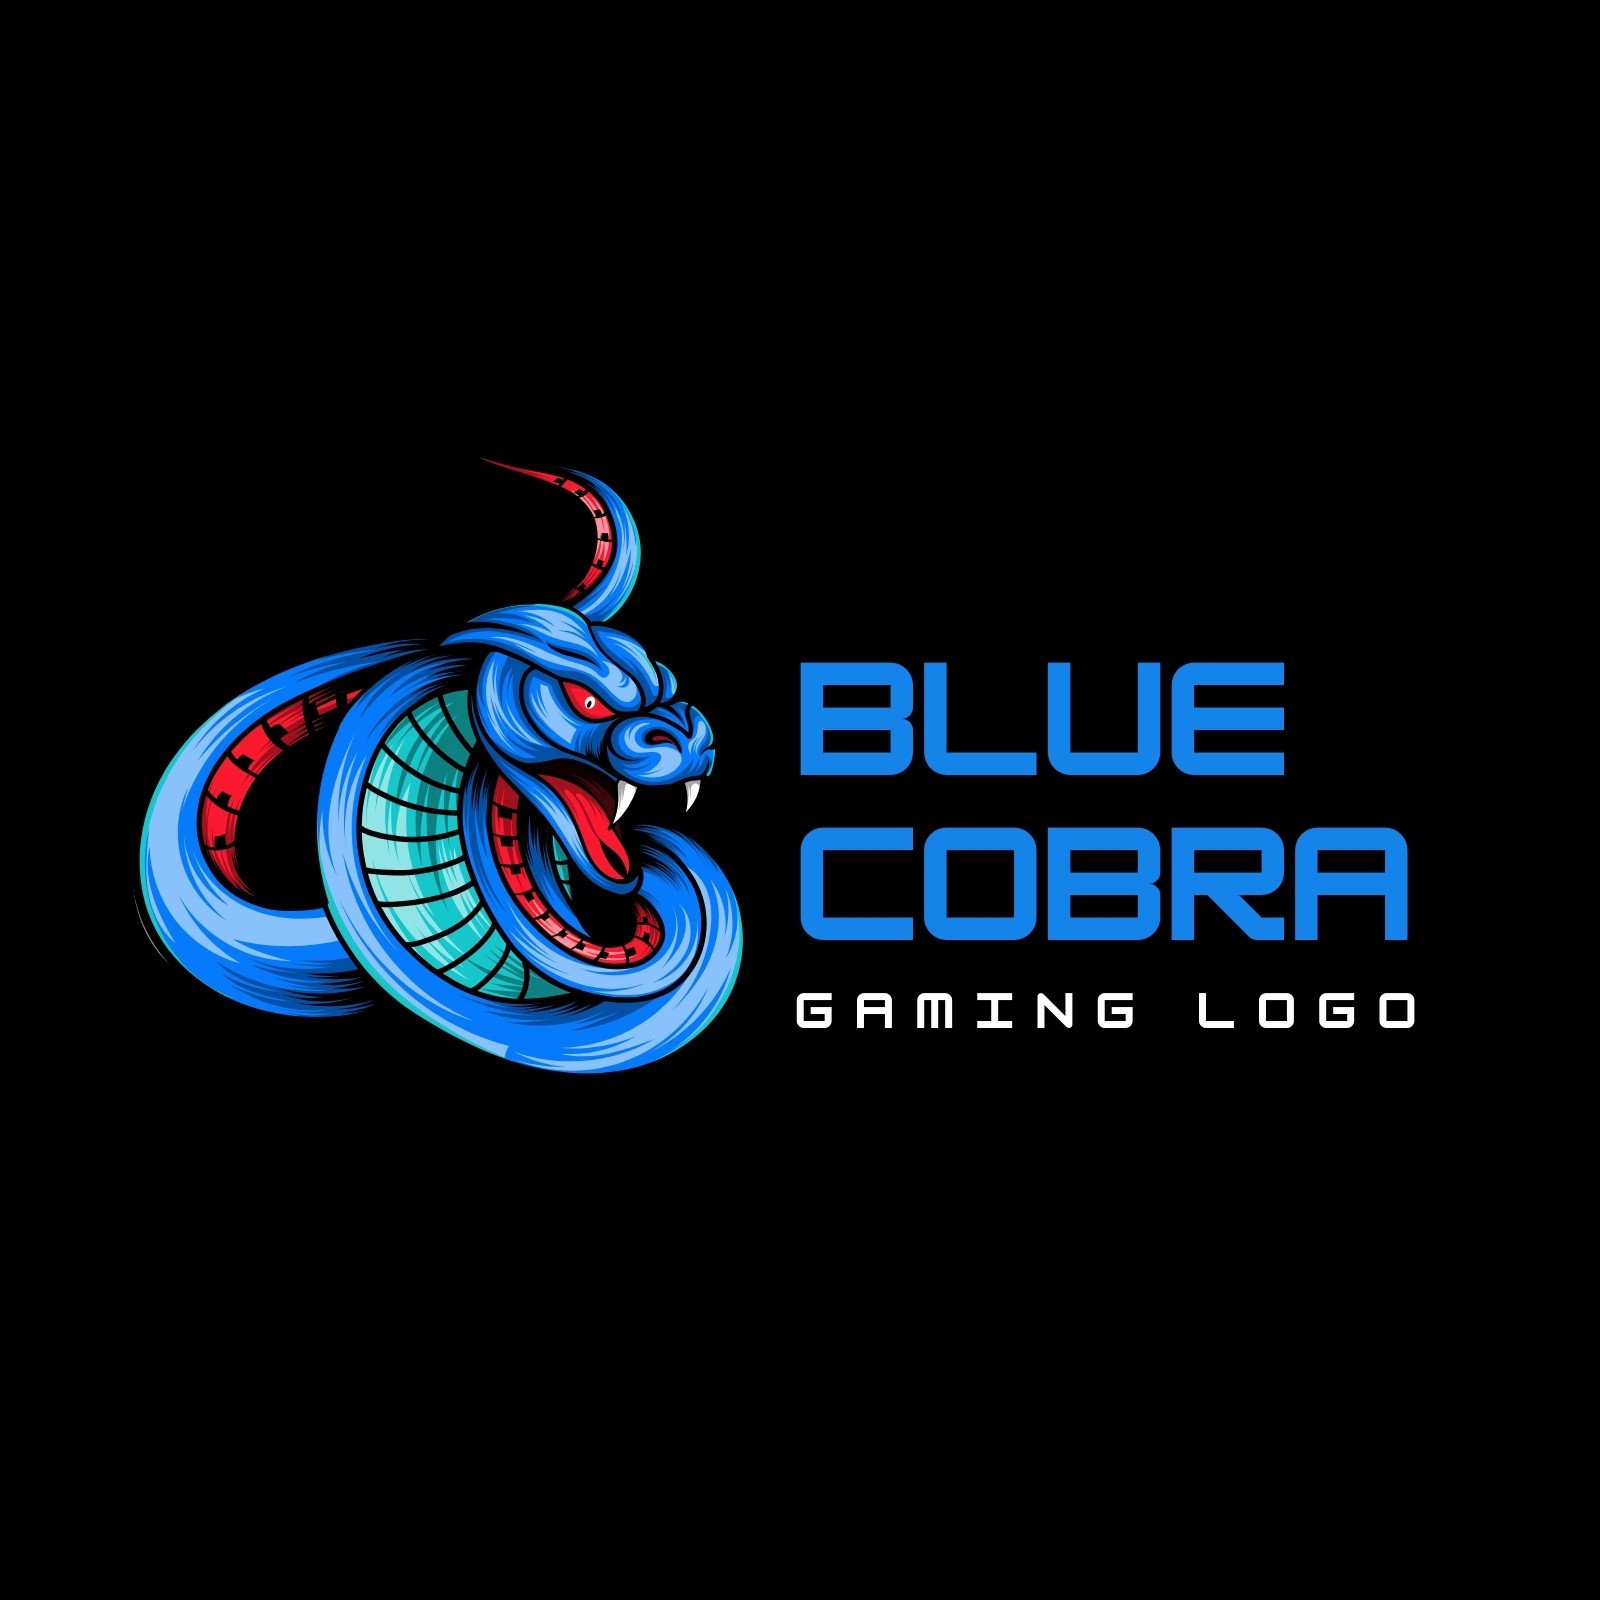 Cobra Mascot Logo Graphic by forte studio · Creative Fabrica